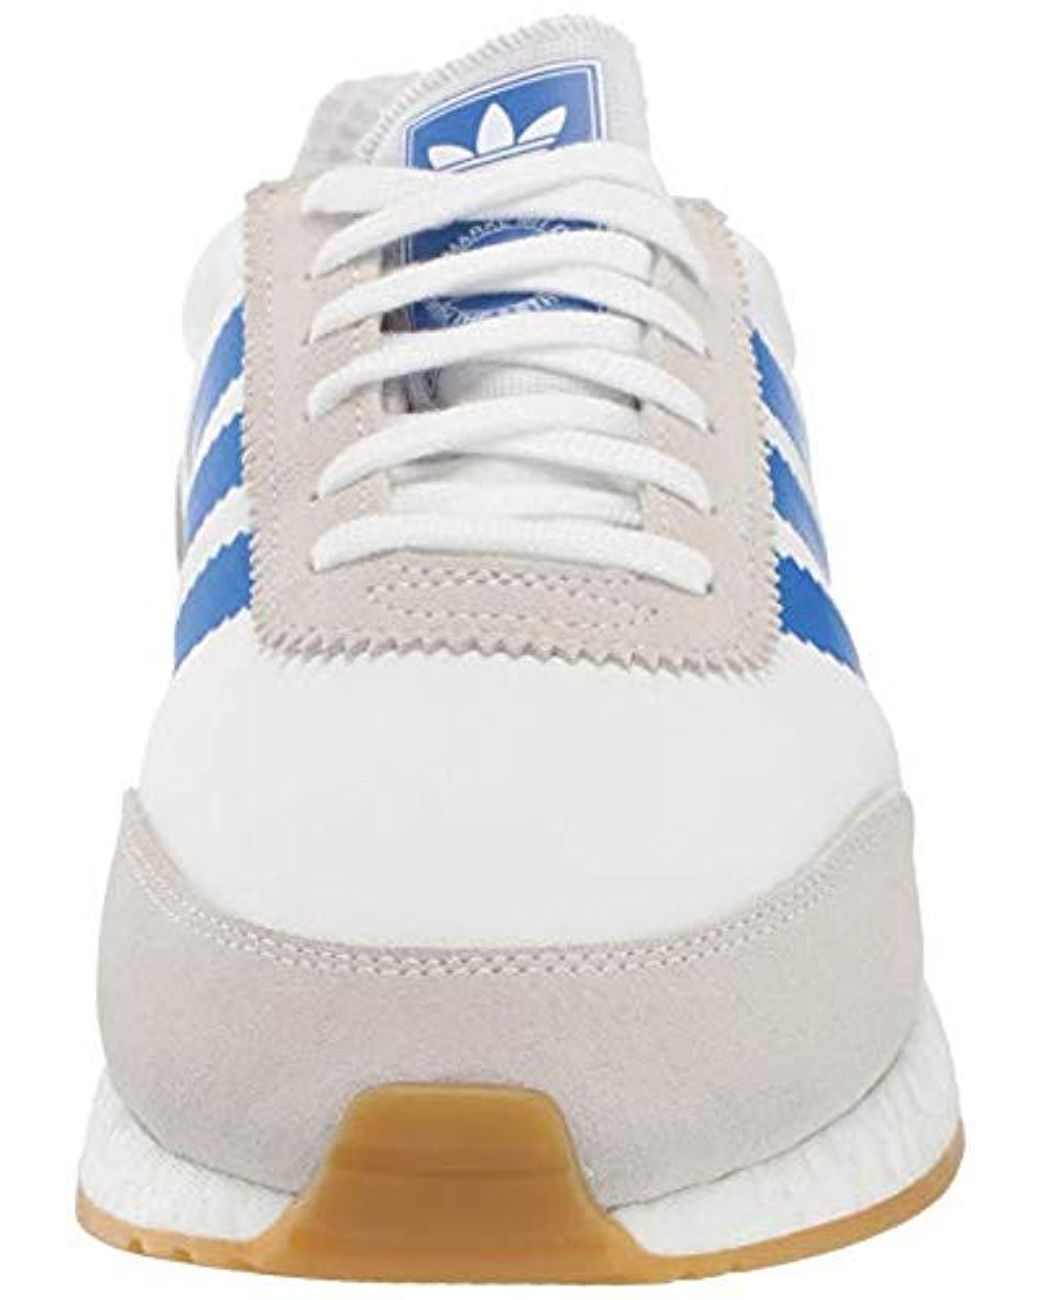 adidas Originals I-5923 Shoe, White/blue/gum, 9.5 M Us for Men | Lyst